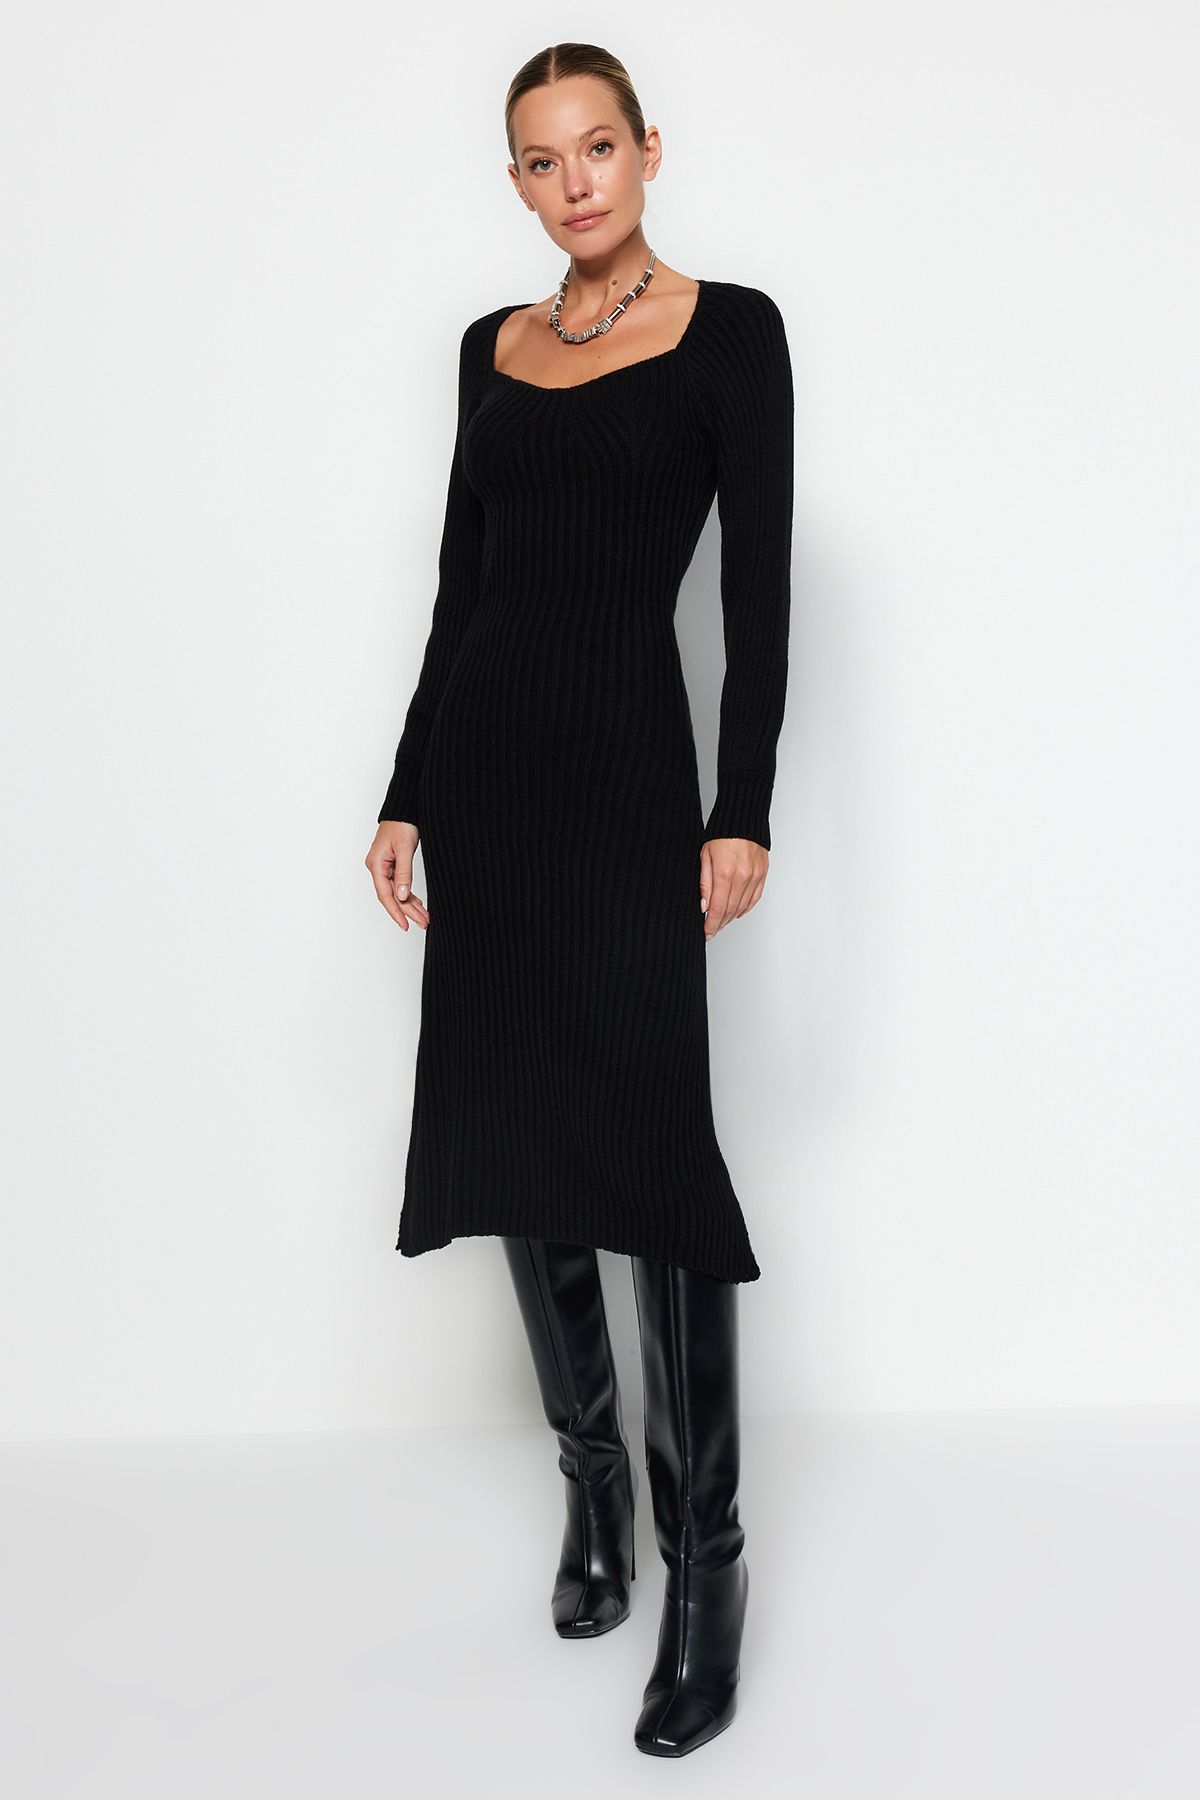 Trendyol Black Midi Knitwear Sweetheart Neckline Dress